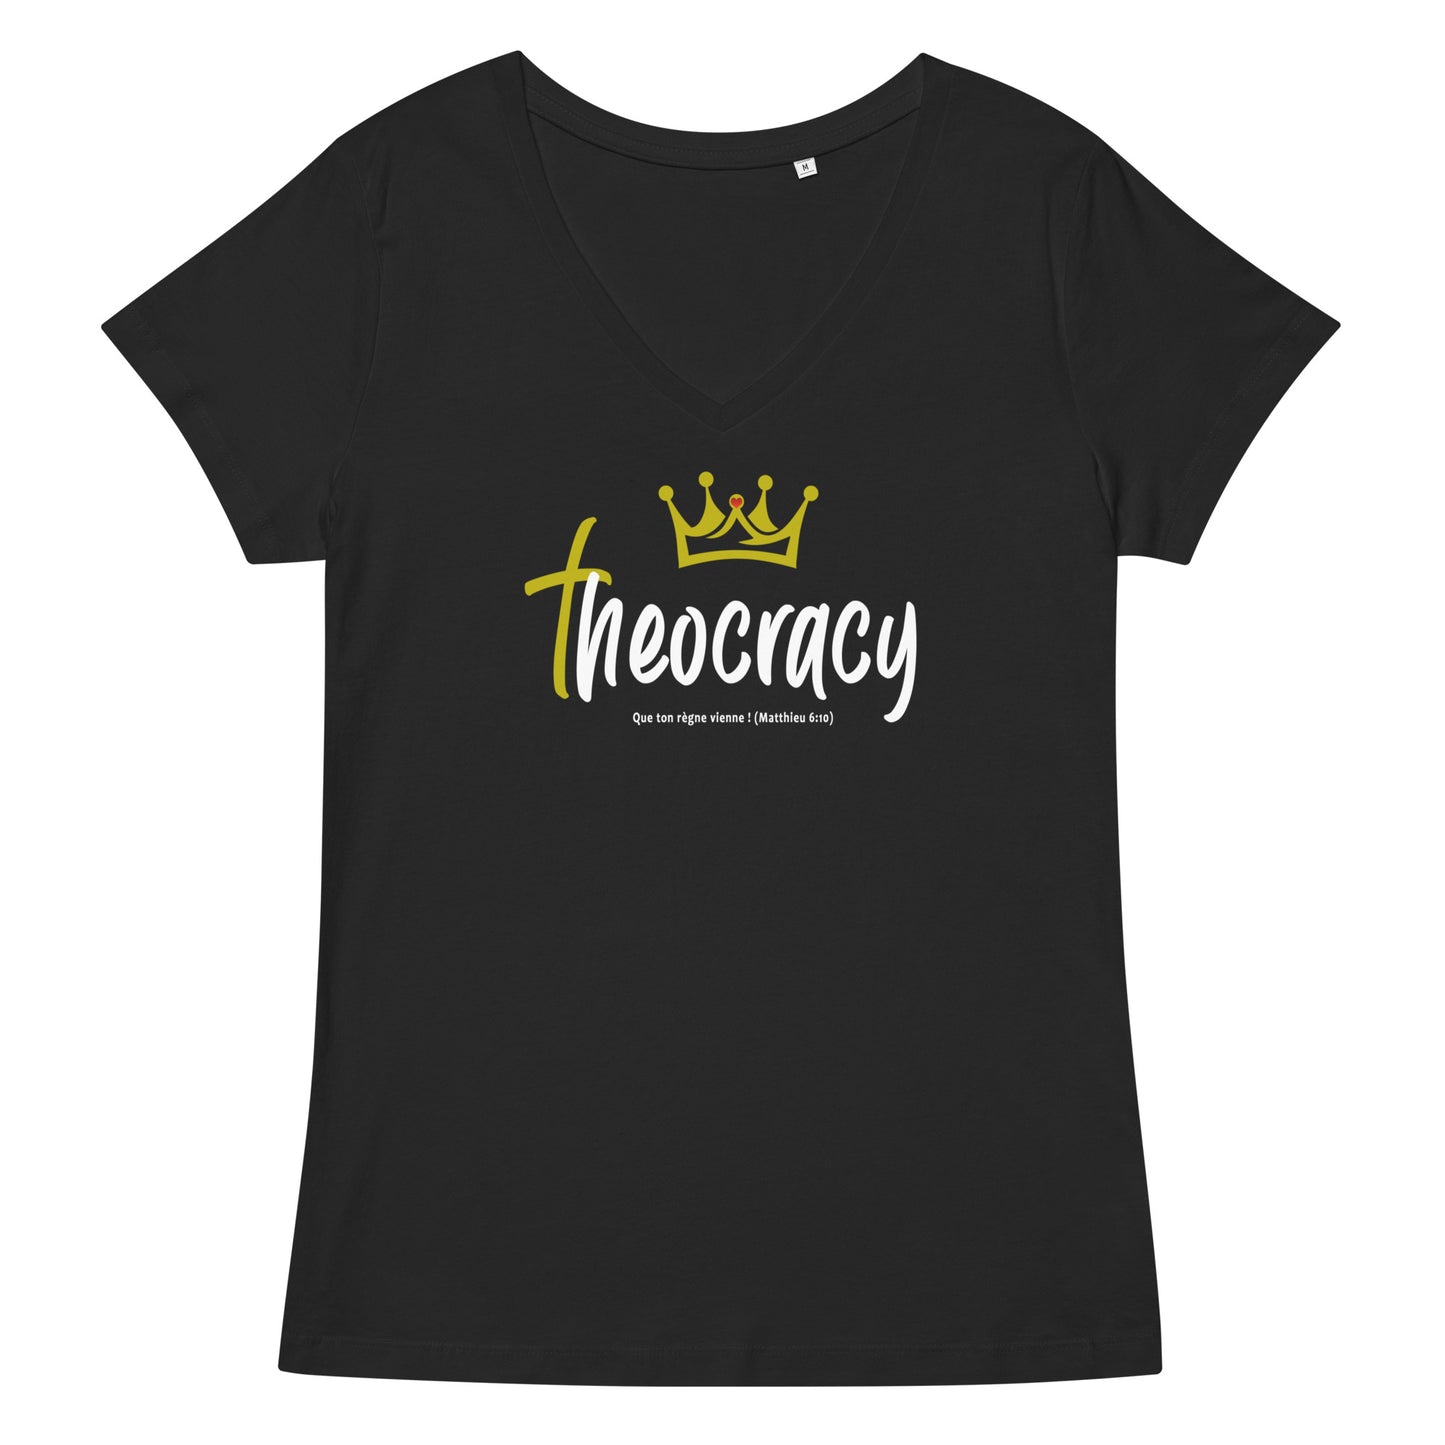 T-shirt coton bio col V ajusté femme THEOCRACY